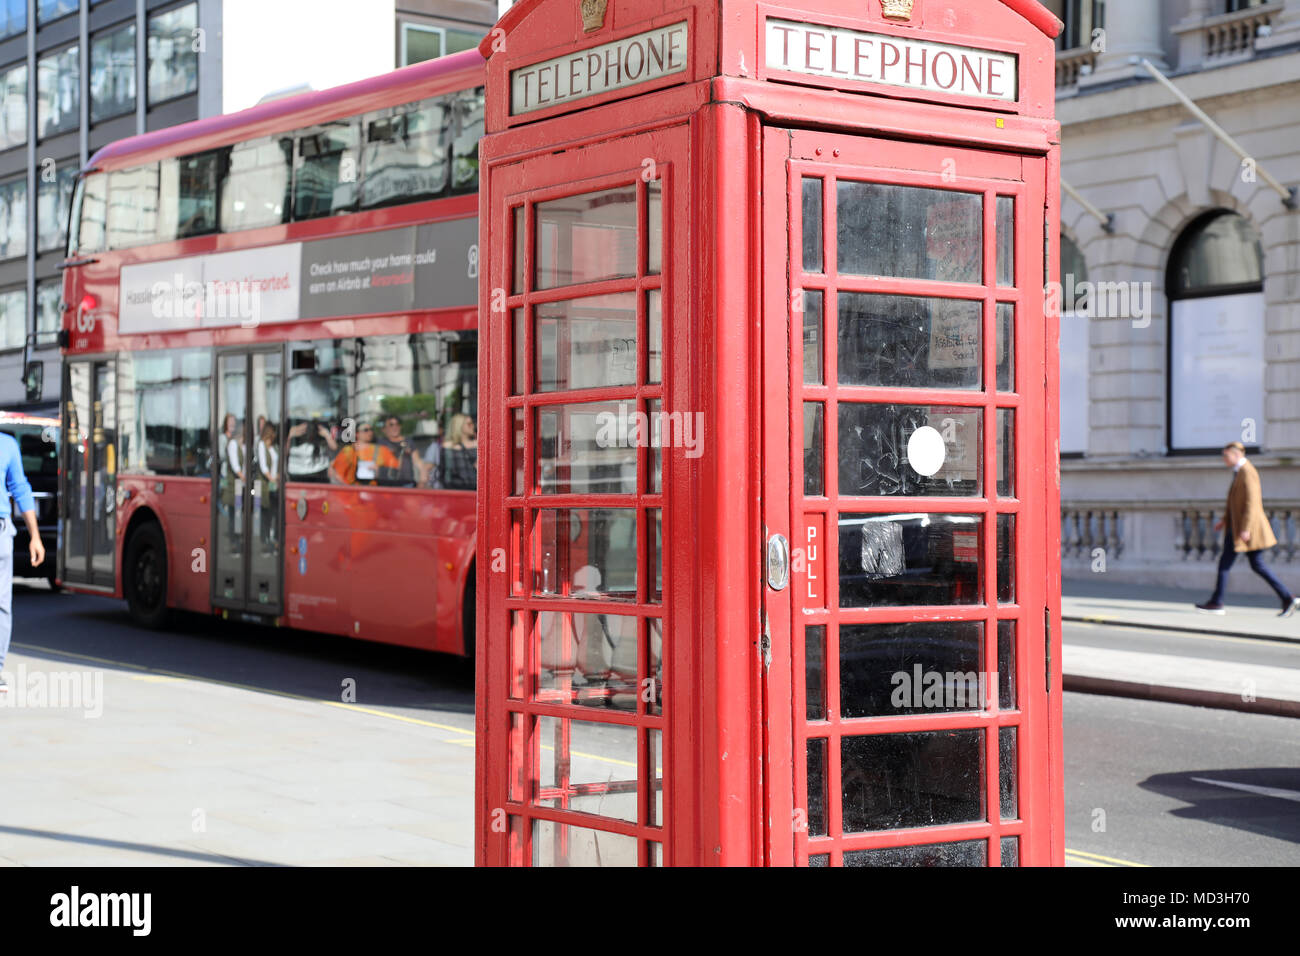 Londres, Royaume-Uni. 18 avril 2018. Une boîte de téléphone rouge sur Waterloo Place, centre de Londres, avec un rouge traditionnel de conduite London bus passé, le 18 avril, 2018 Photo : Dominic Dudley/Alamy Live News Banque D'Images